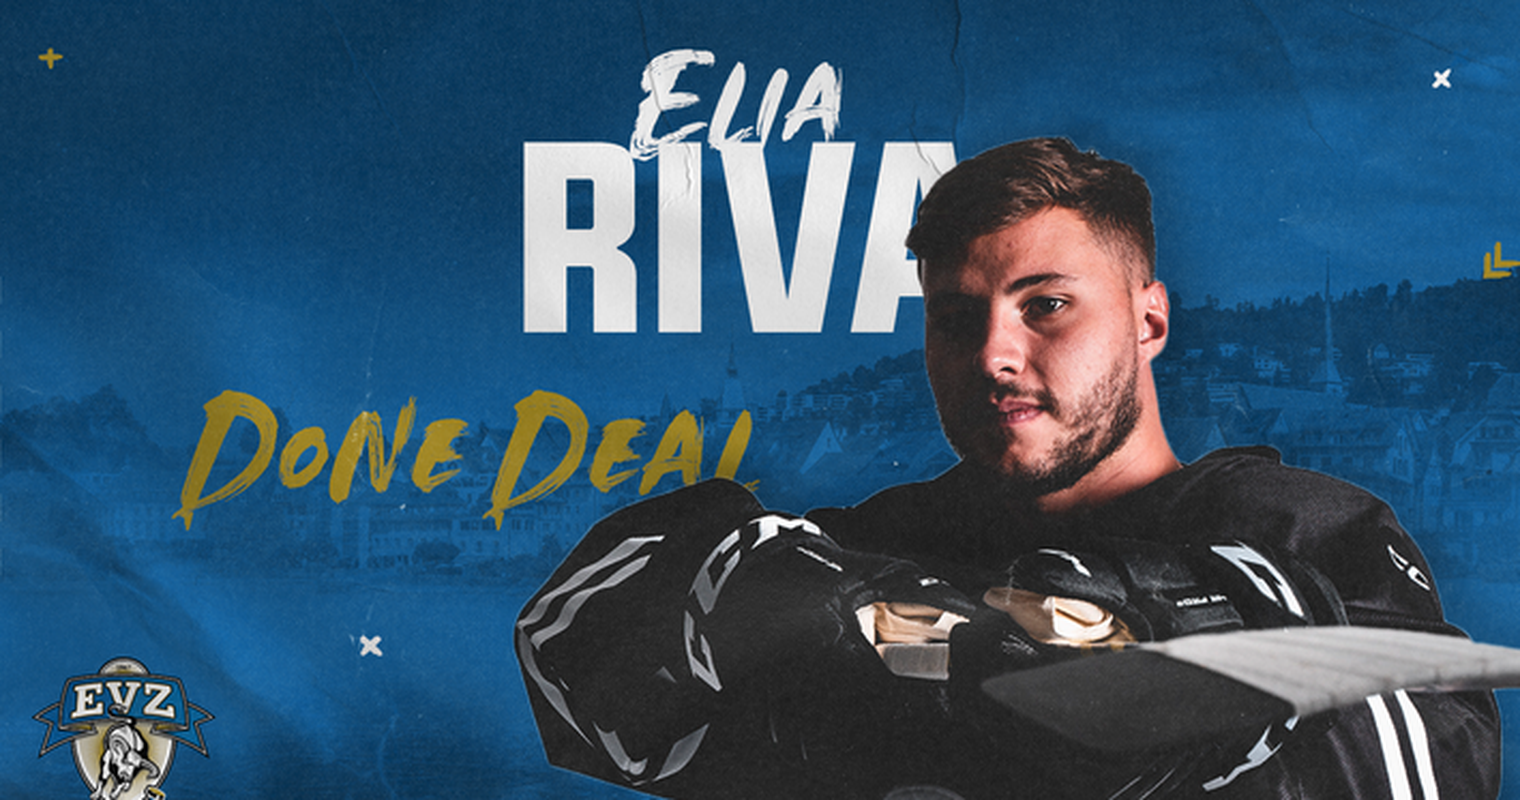 Elia Riva wechselt zum EVZ